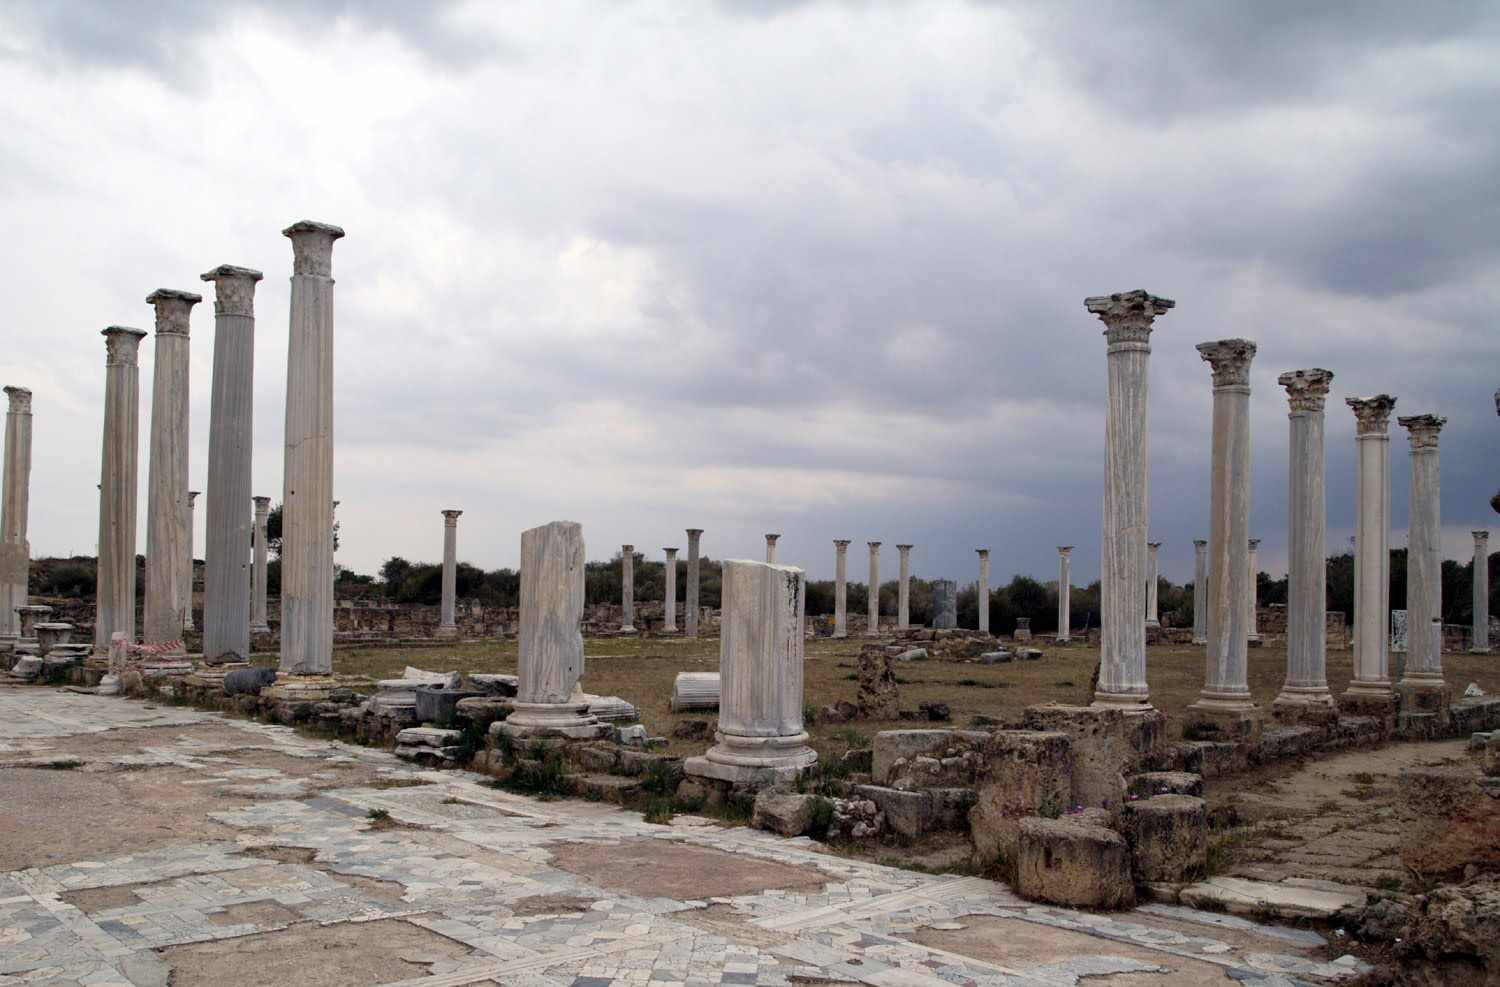 Βρέθηκαν αρχαία αγάλματα στην αρχαία Σαλαμίνα, στα κατεχόμενα της Κύπρου